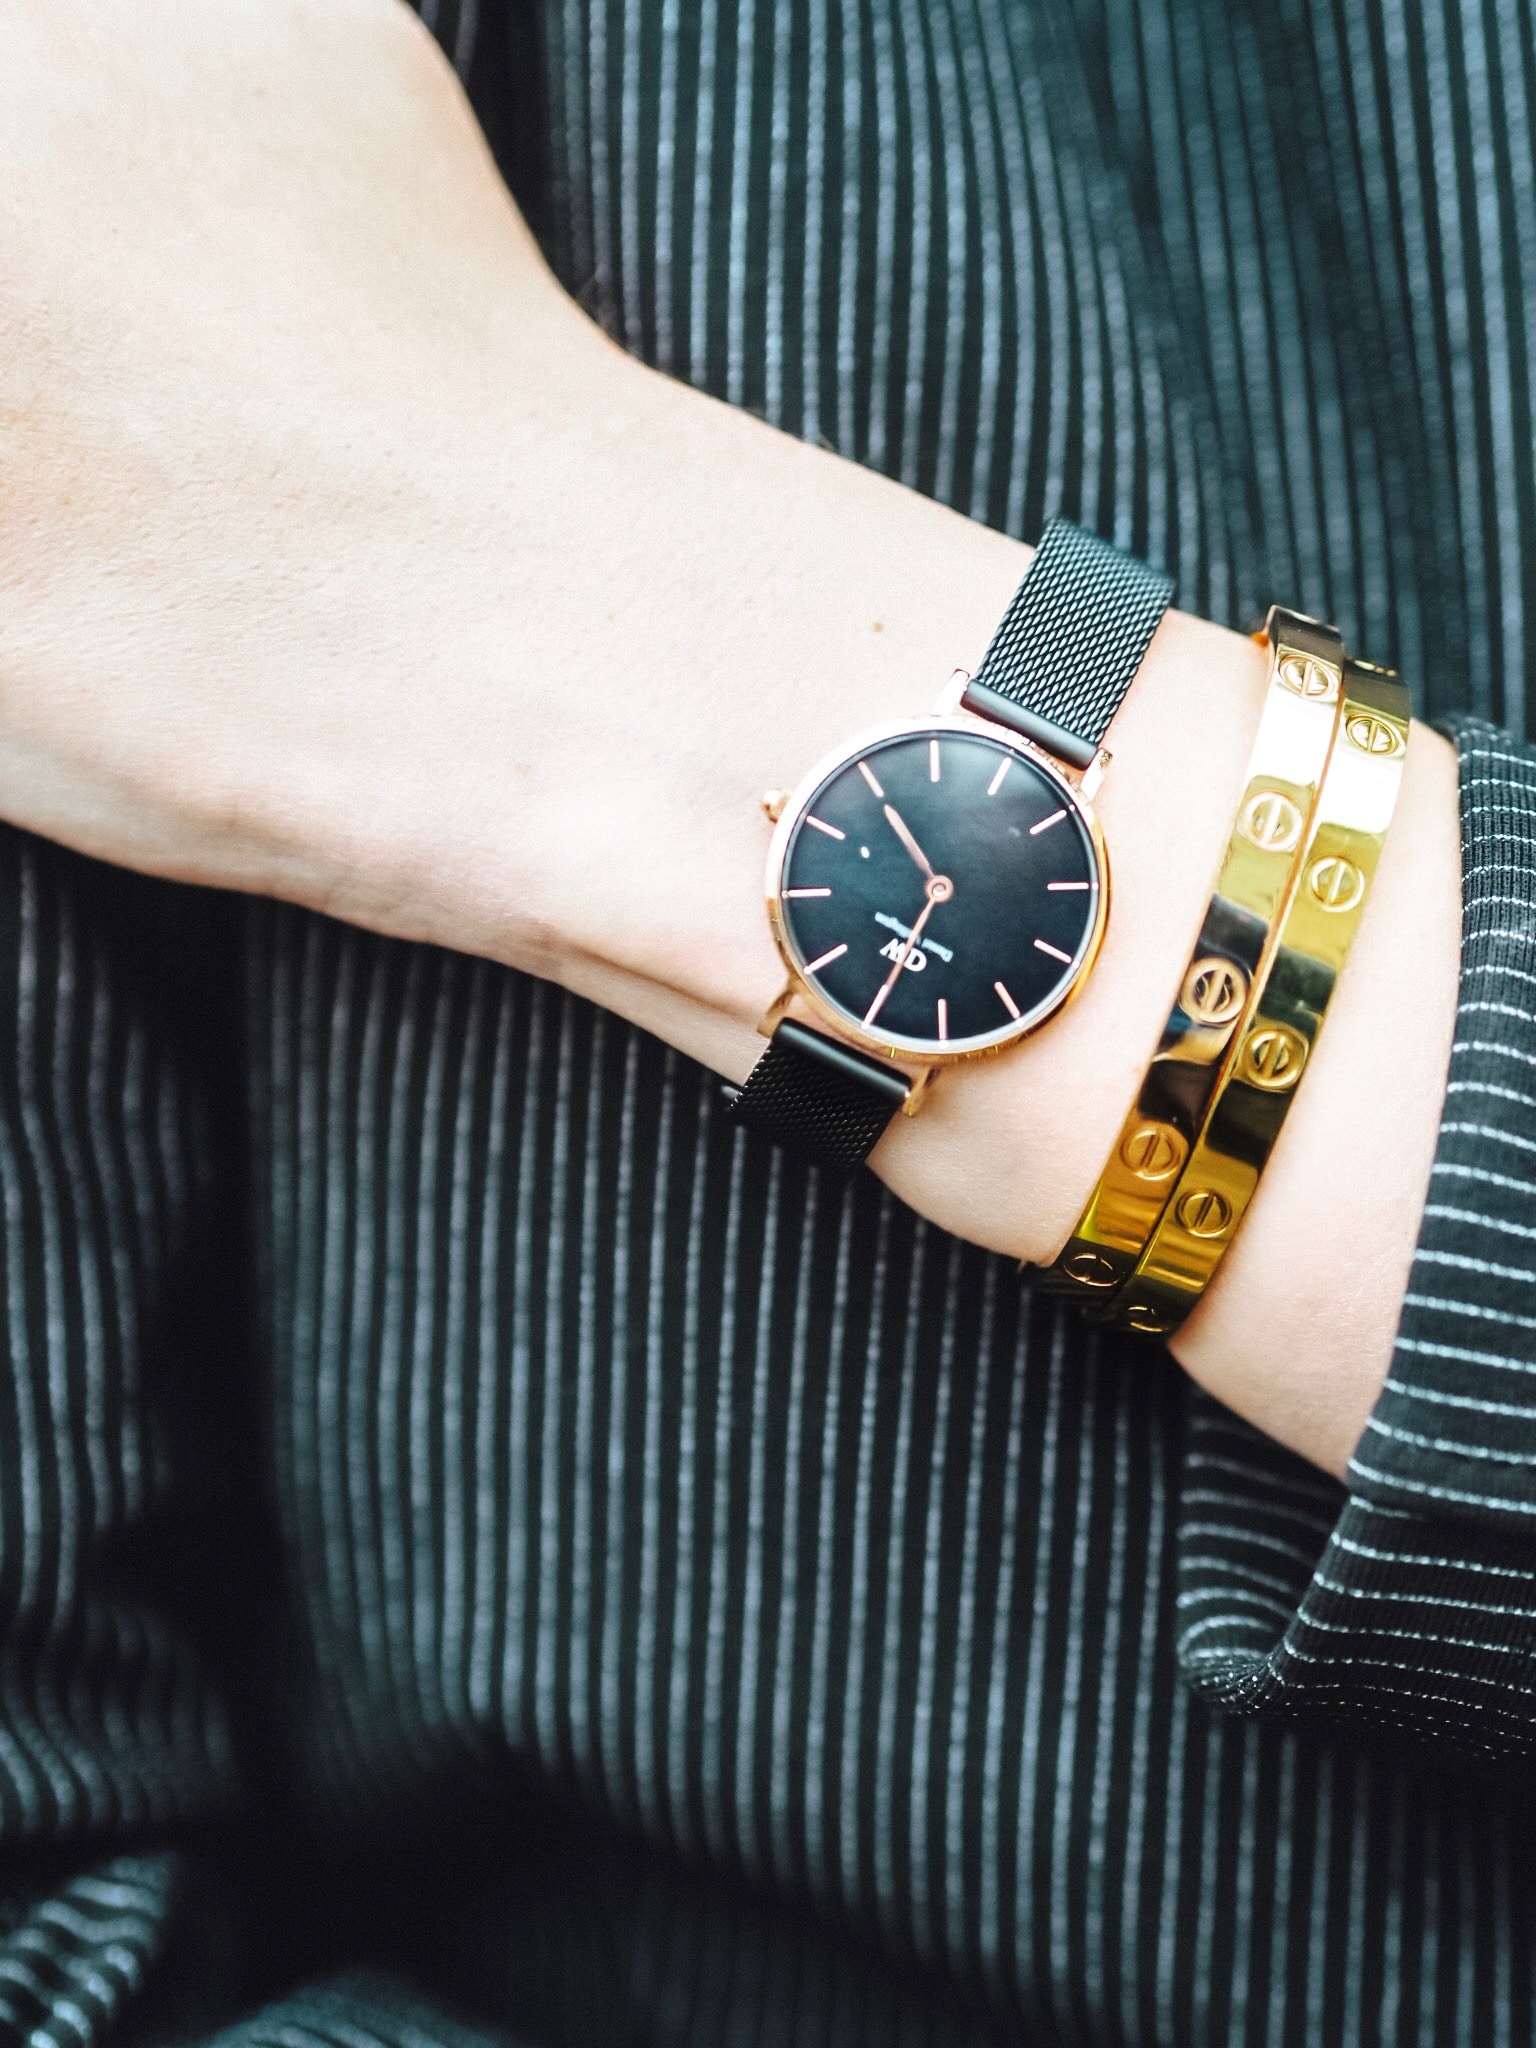 Ich trage besonders gerne im Alltag schöne Uhren von Daniel Wellington. Gefunden habe ich eine große Auswahl an Uhren und Schmuck bei Valmano im Onlineshop.